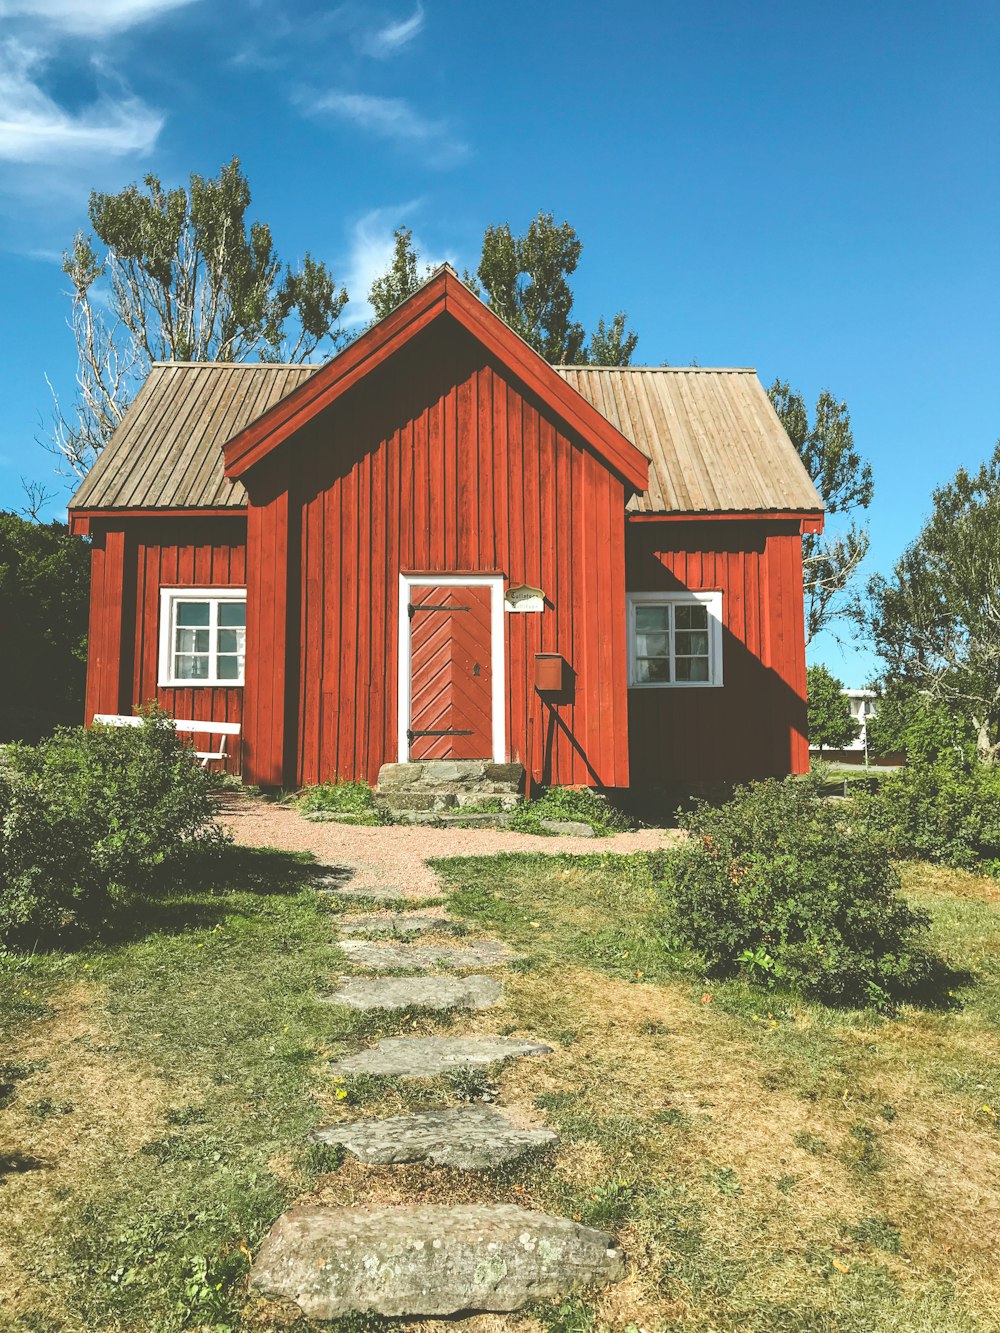 Casa de madera roja y blanca cerca de árboles verdes bajo el cielo azul durante el día